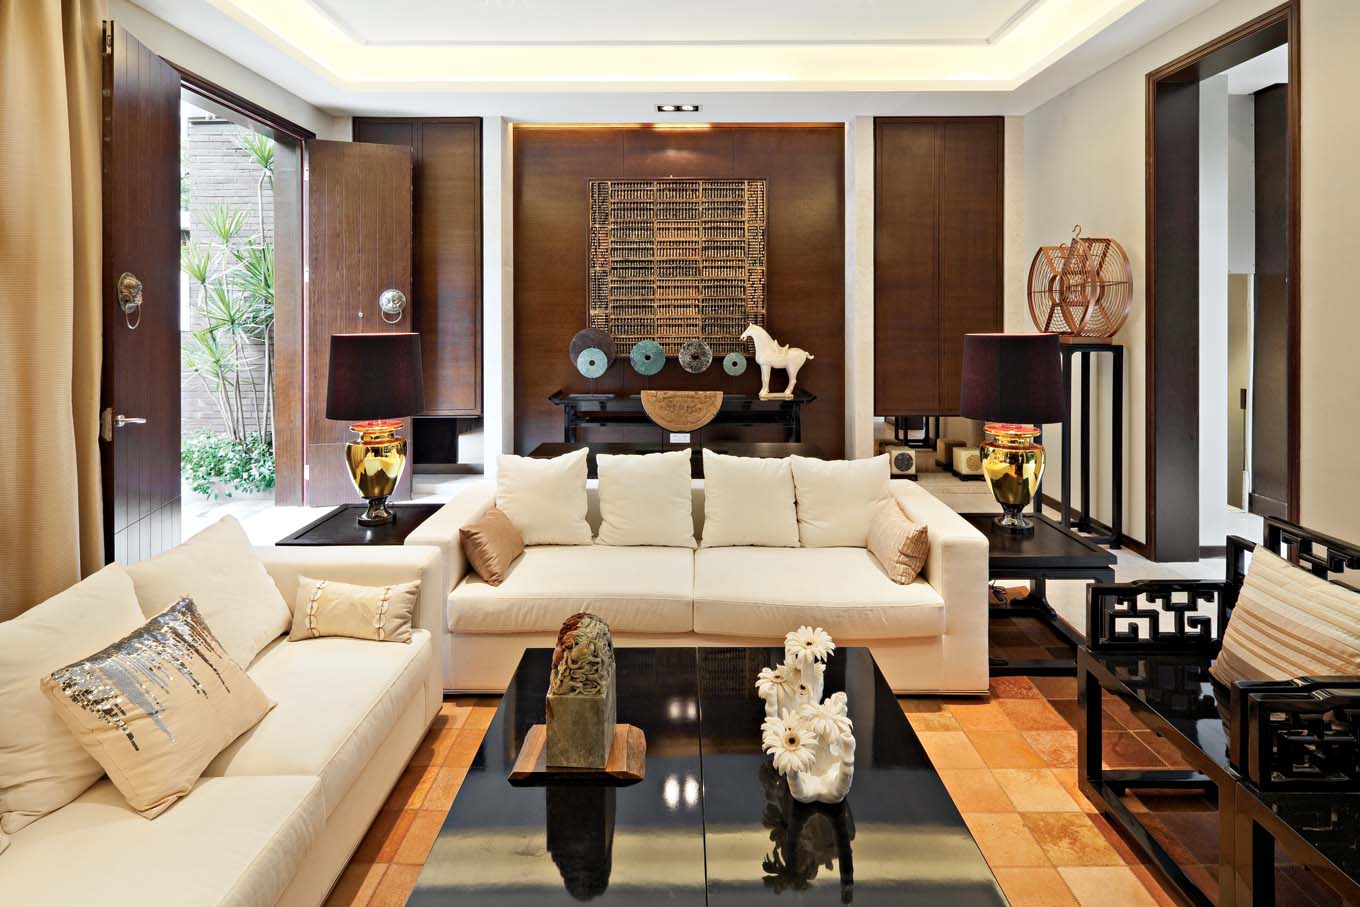 简约 中式 红杉溪谷 别墅 客厅图片来自一道伍禾装饰设计师杨洋在古典与现代的恬静舒适静谧的空间的分享